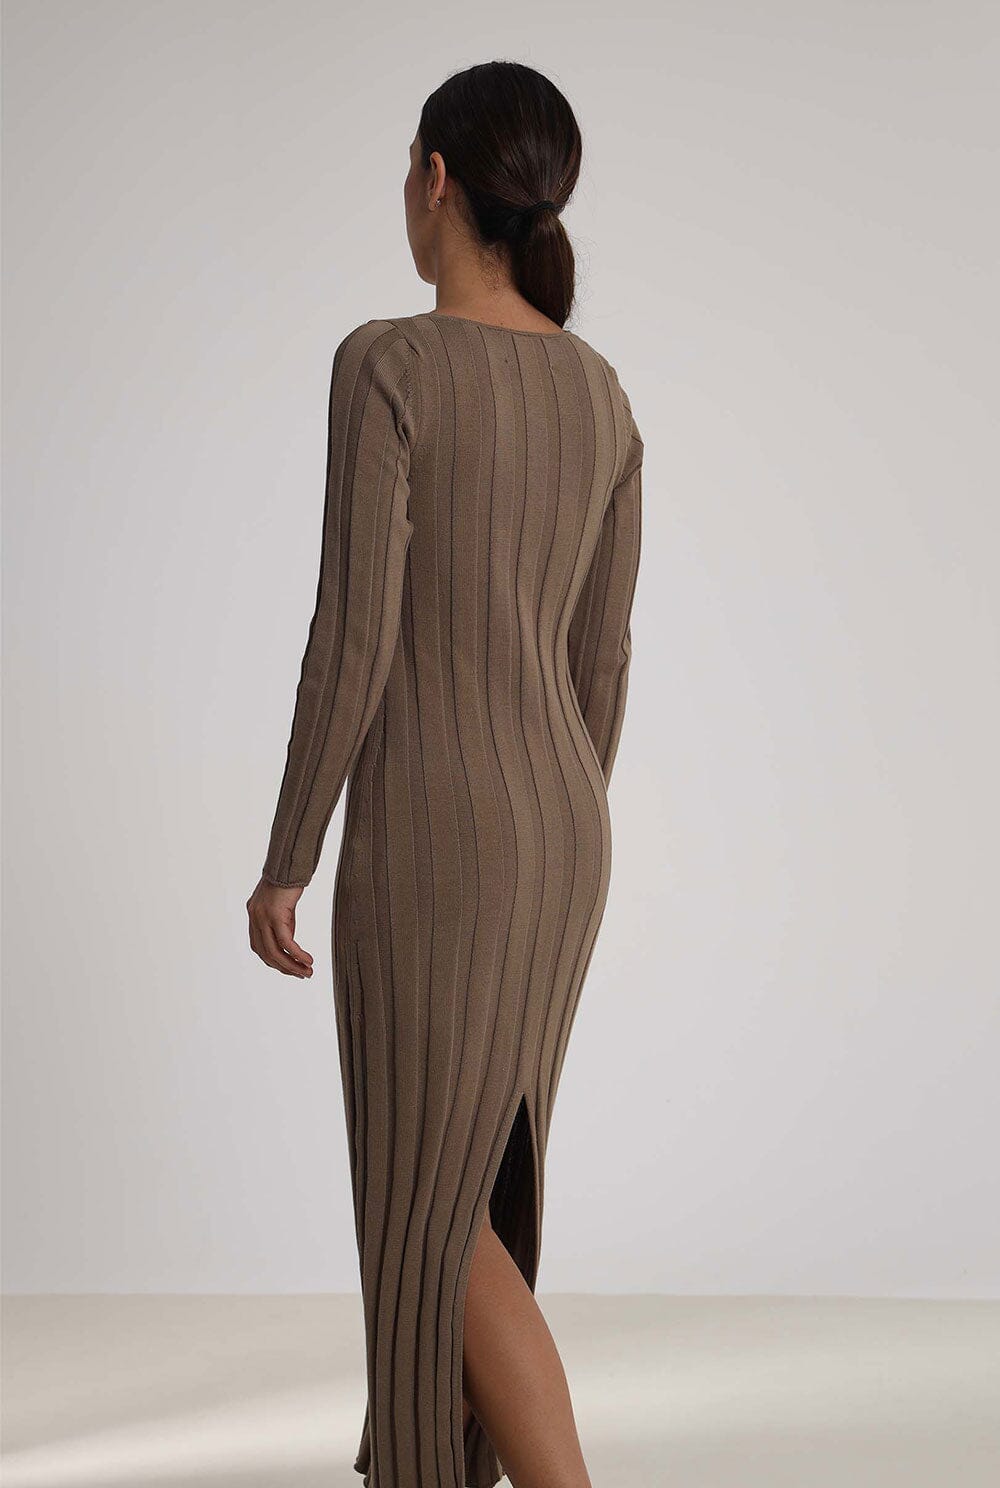 KNIT DRESS: SAND Dresses The Villã Concept 